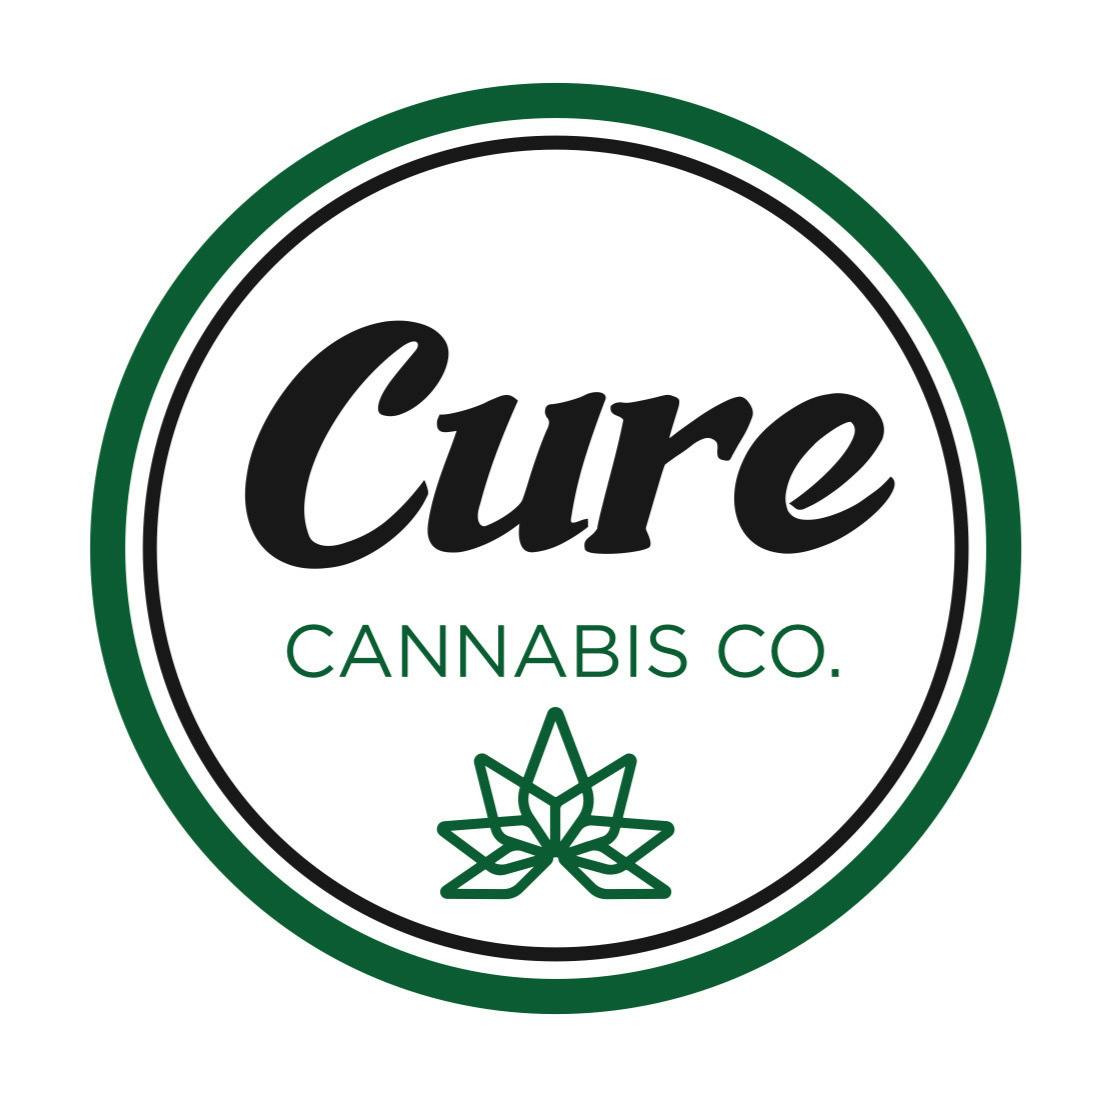 Cure Cannabis Company logo